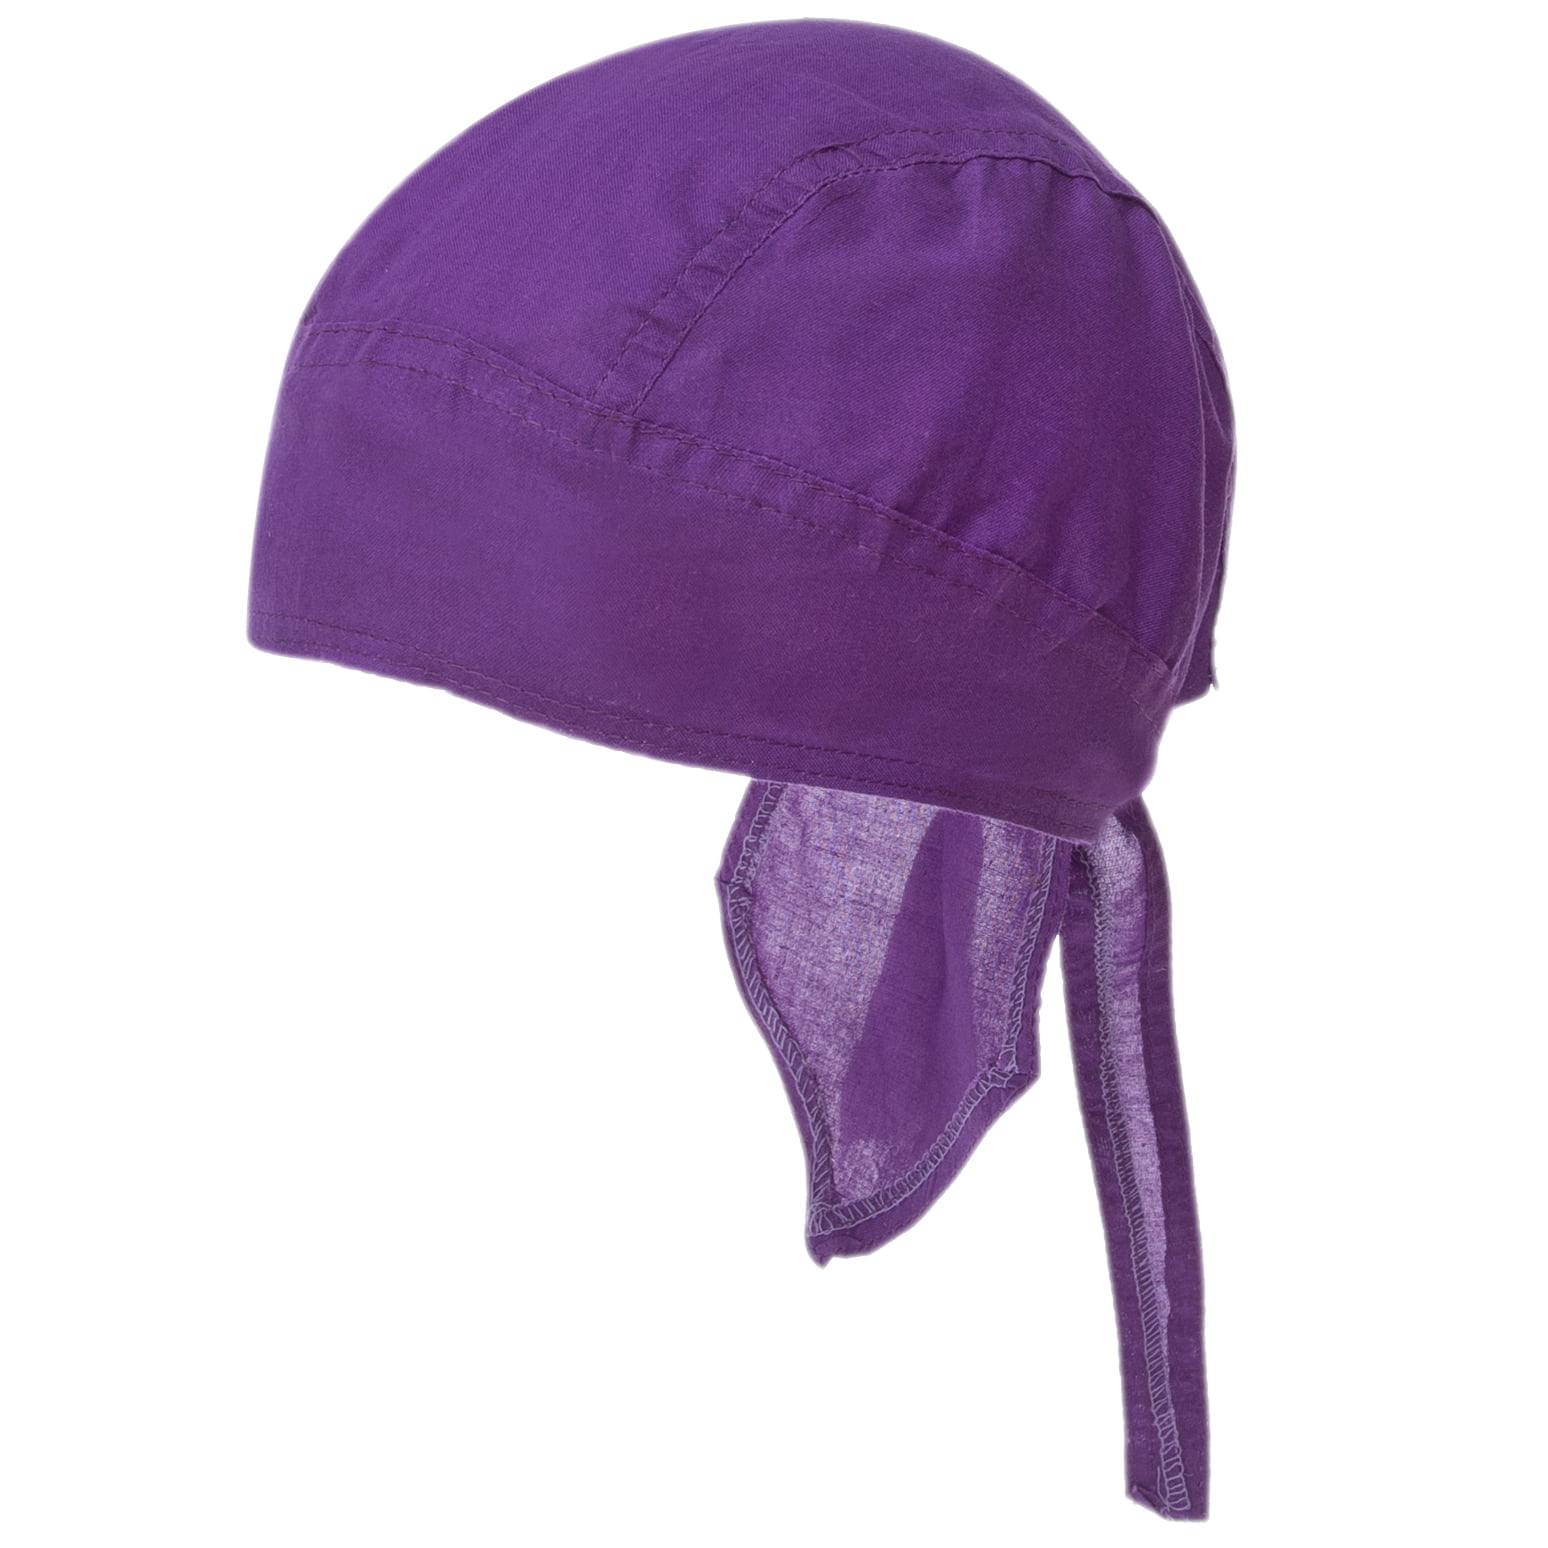 12pcs Grape / Purple Solid Color Head Wrap - 100% Cotton - Imported - Grape / Purple, 12 pieces